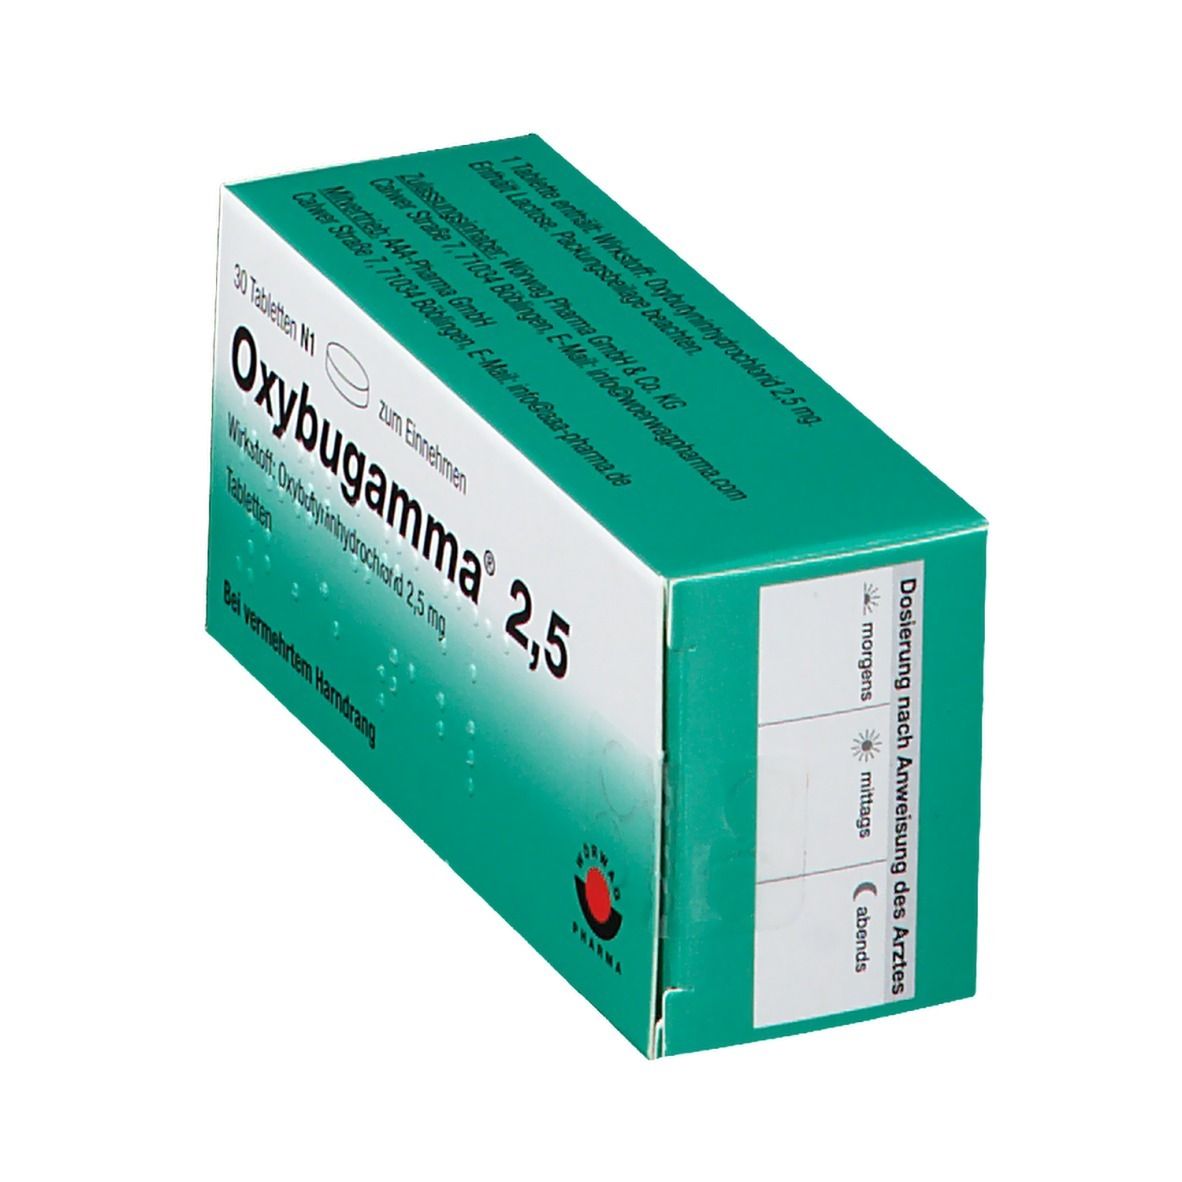 Oxybugamma 2.5